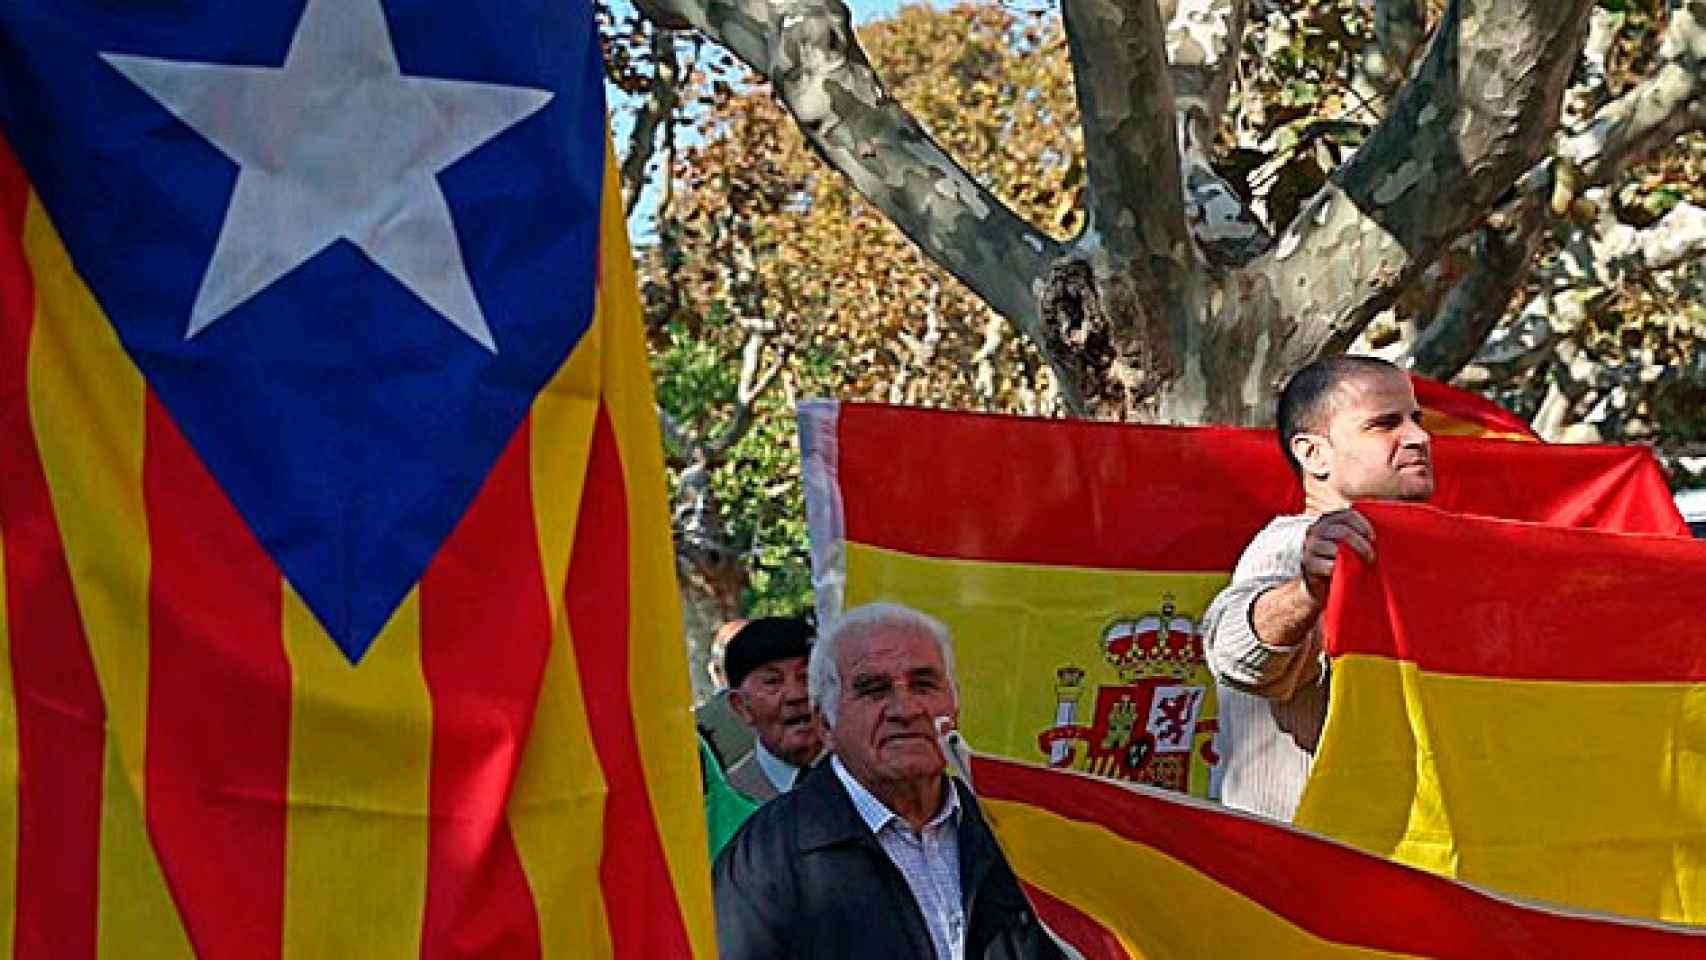 'Esteladas' y banderas de España durante una concentración a las puertas del Parlament con motivo de la aprobación de la resolución independentista con partidarios de una nación u otra. Política